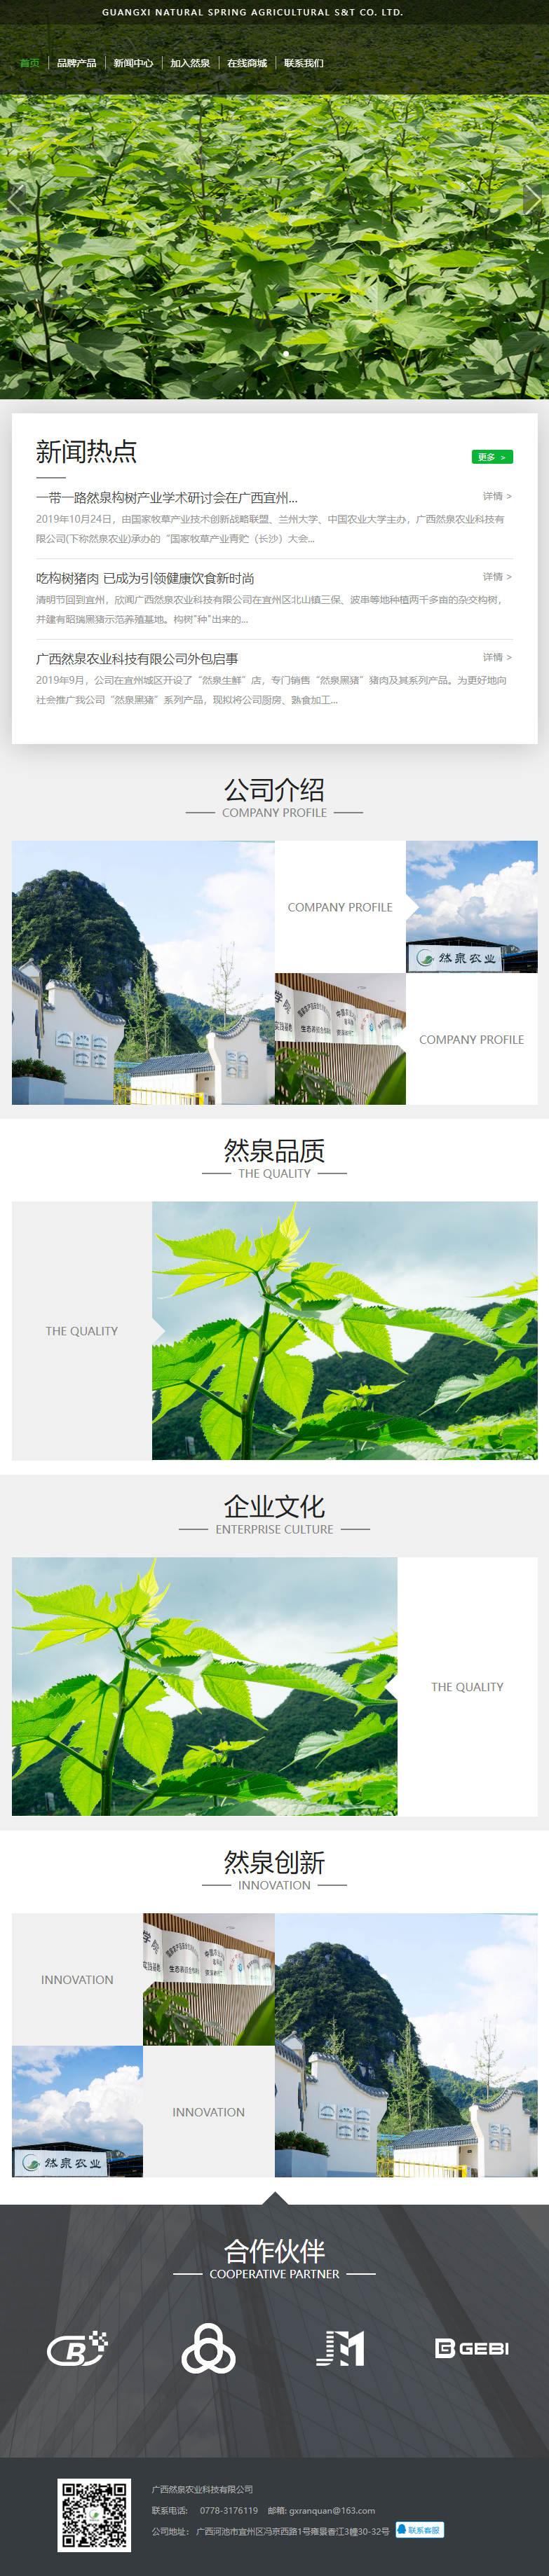 广西然泉农业科技有限公司网站案例